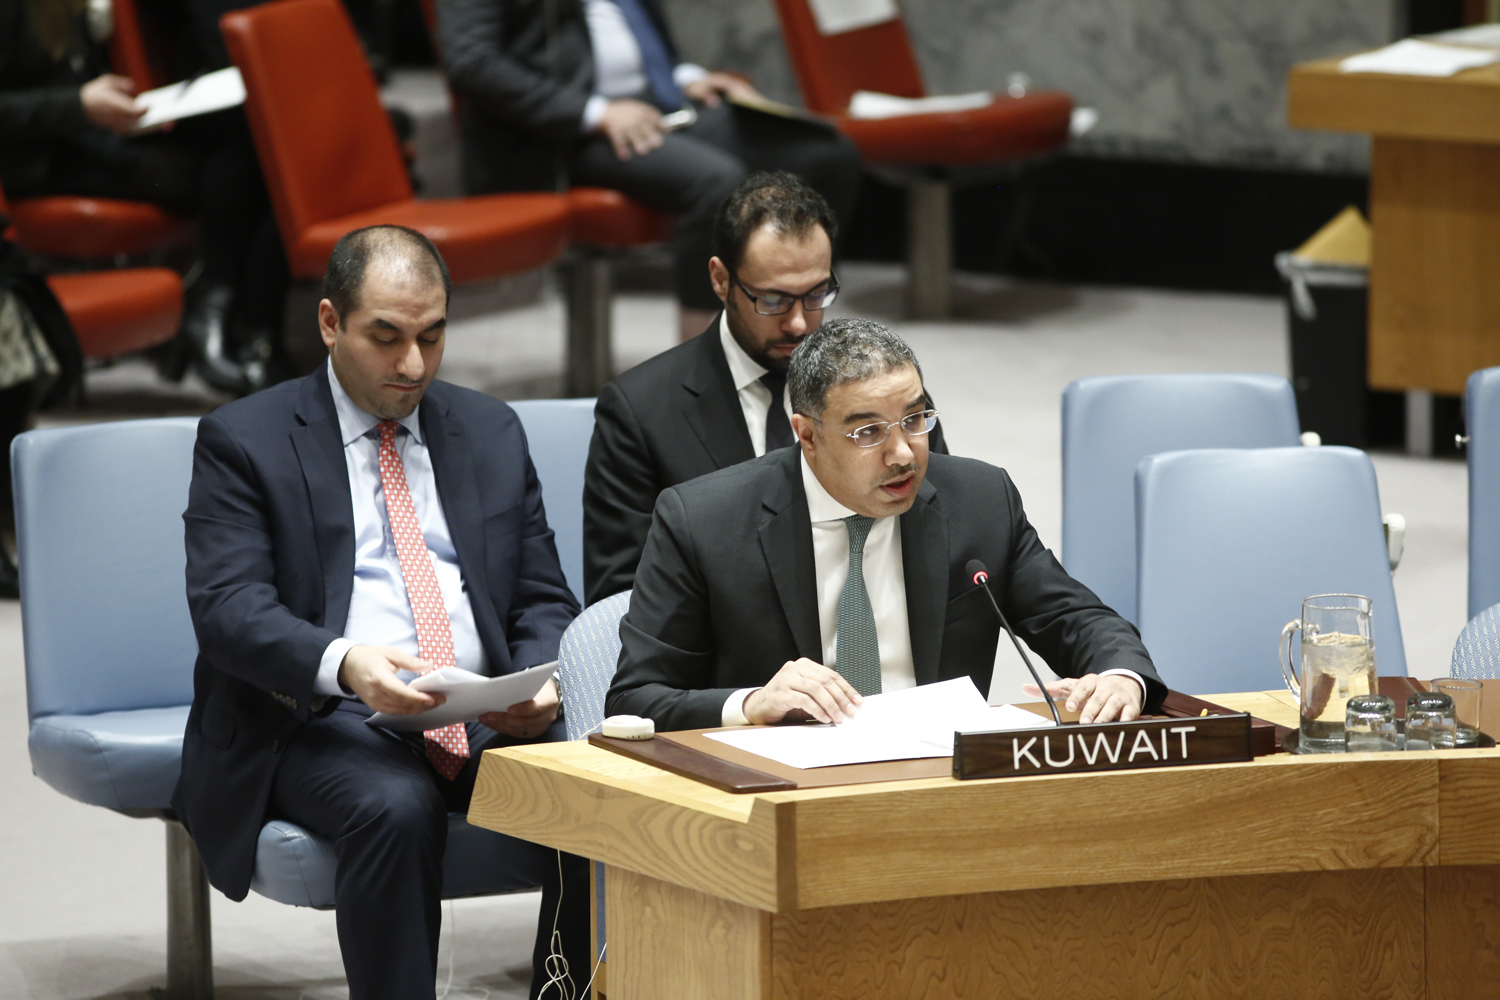 القائم بالأعمال بالإنابة المستشار عبدالعزيز سعود الجارالله  يلقي كلمة دولة الكويت أمام جلسة مجلس الامن بمقر الامم المتحدة في نيويورك